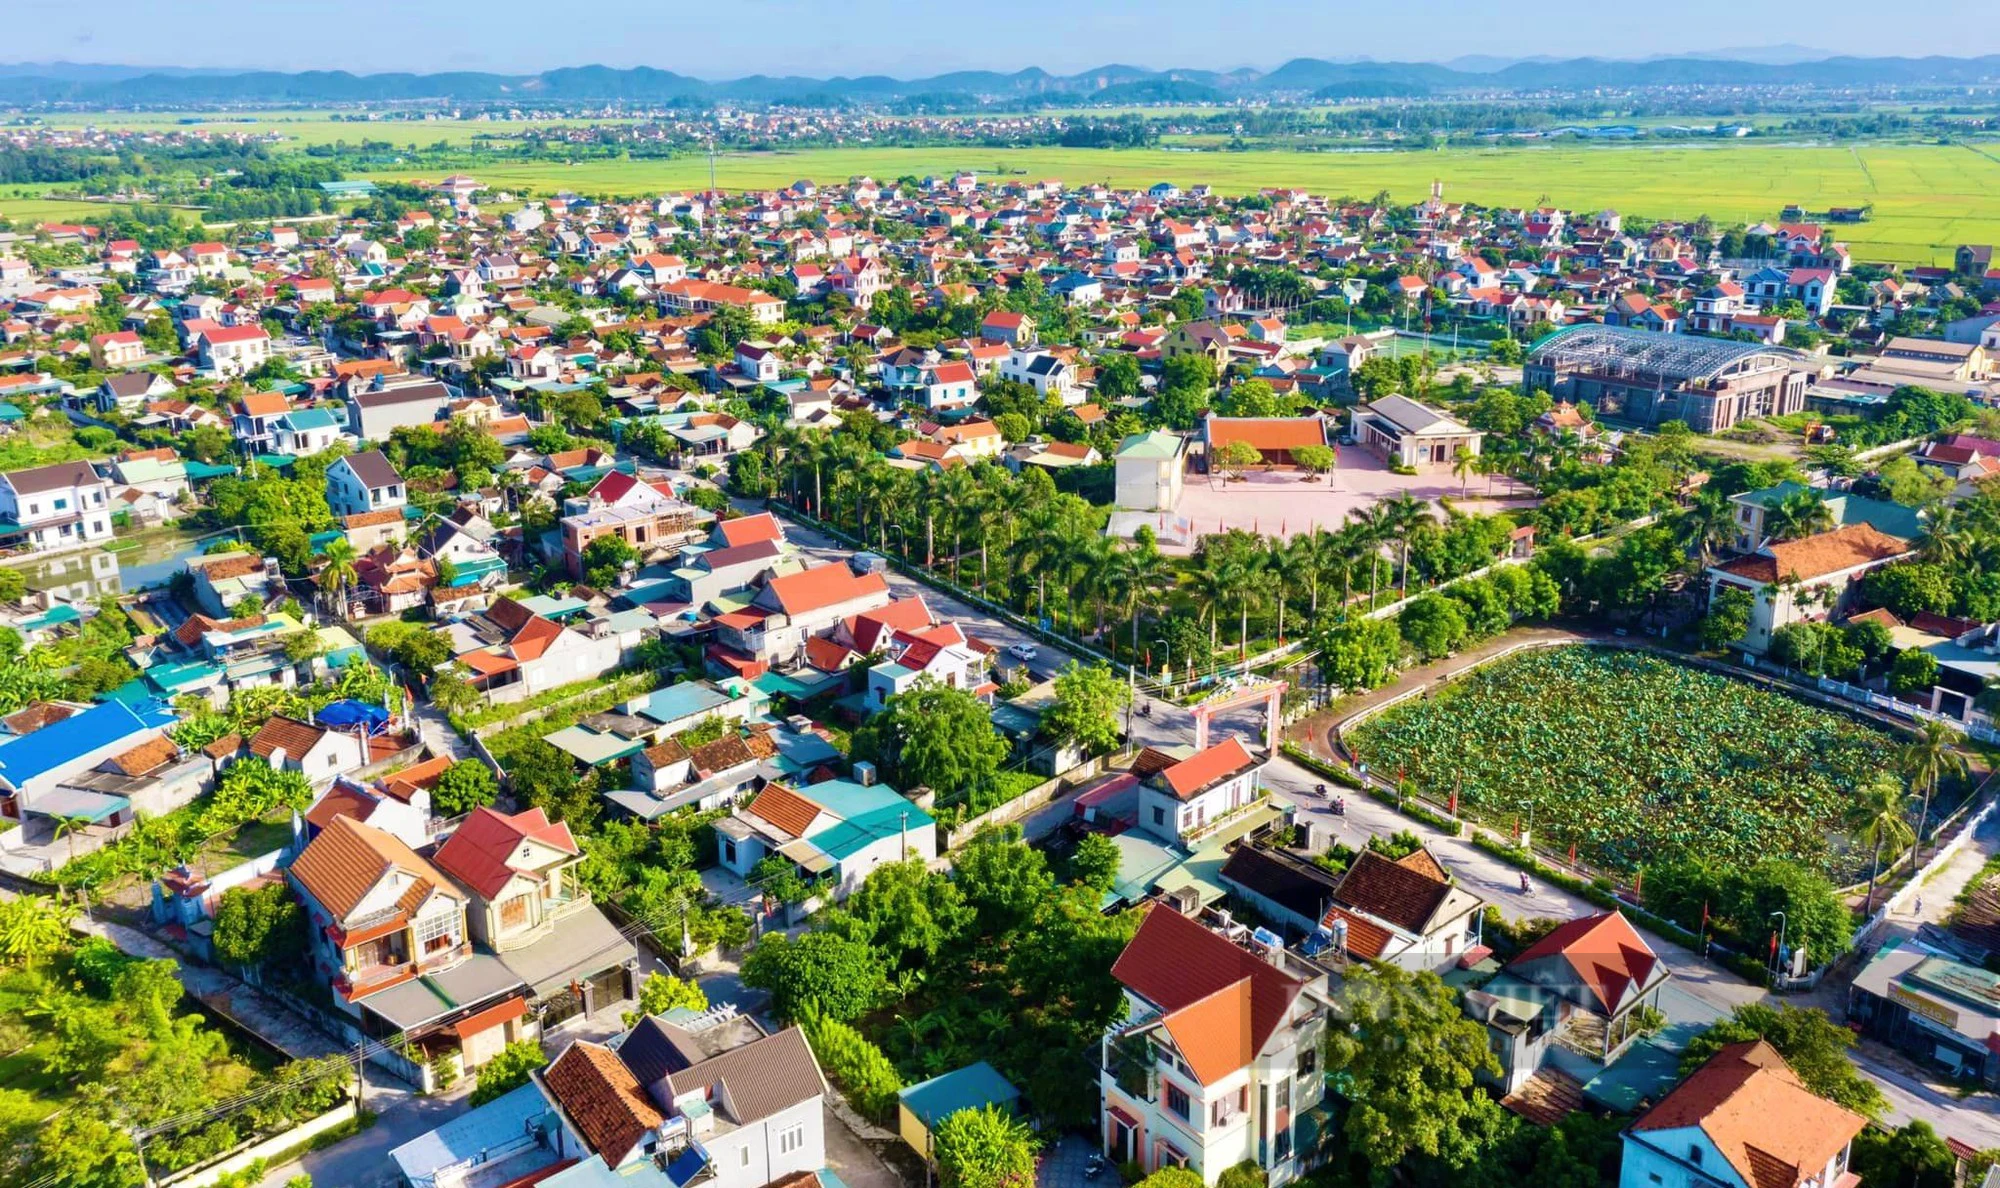 Xây dựng nông thôn mới ở Nghệ An: Làng quê đổi thay, huyện có thị trấn chuẩn đô thị thông minh - Ảnh 1.